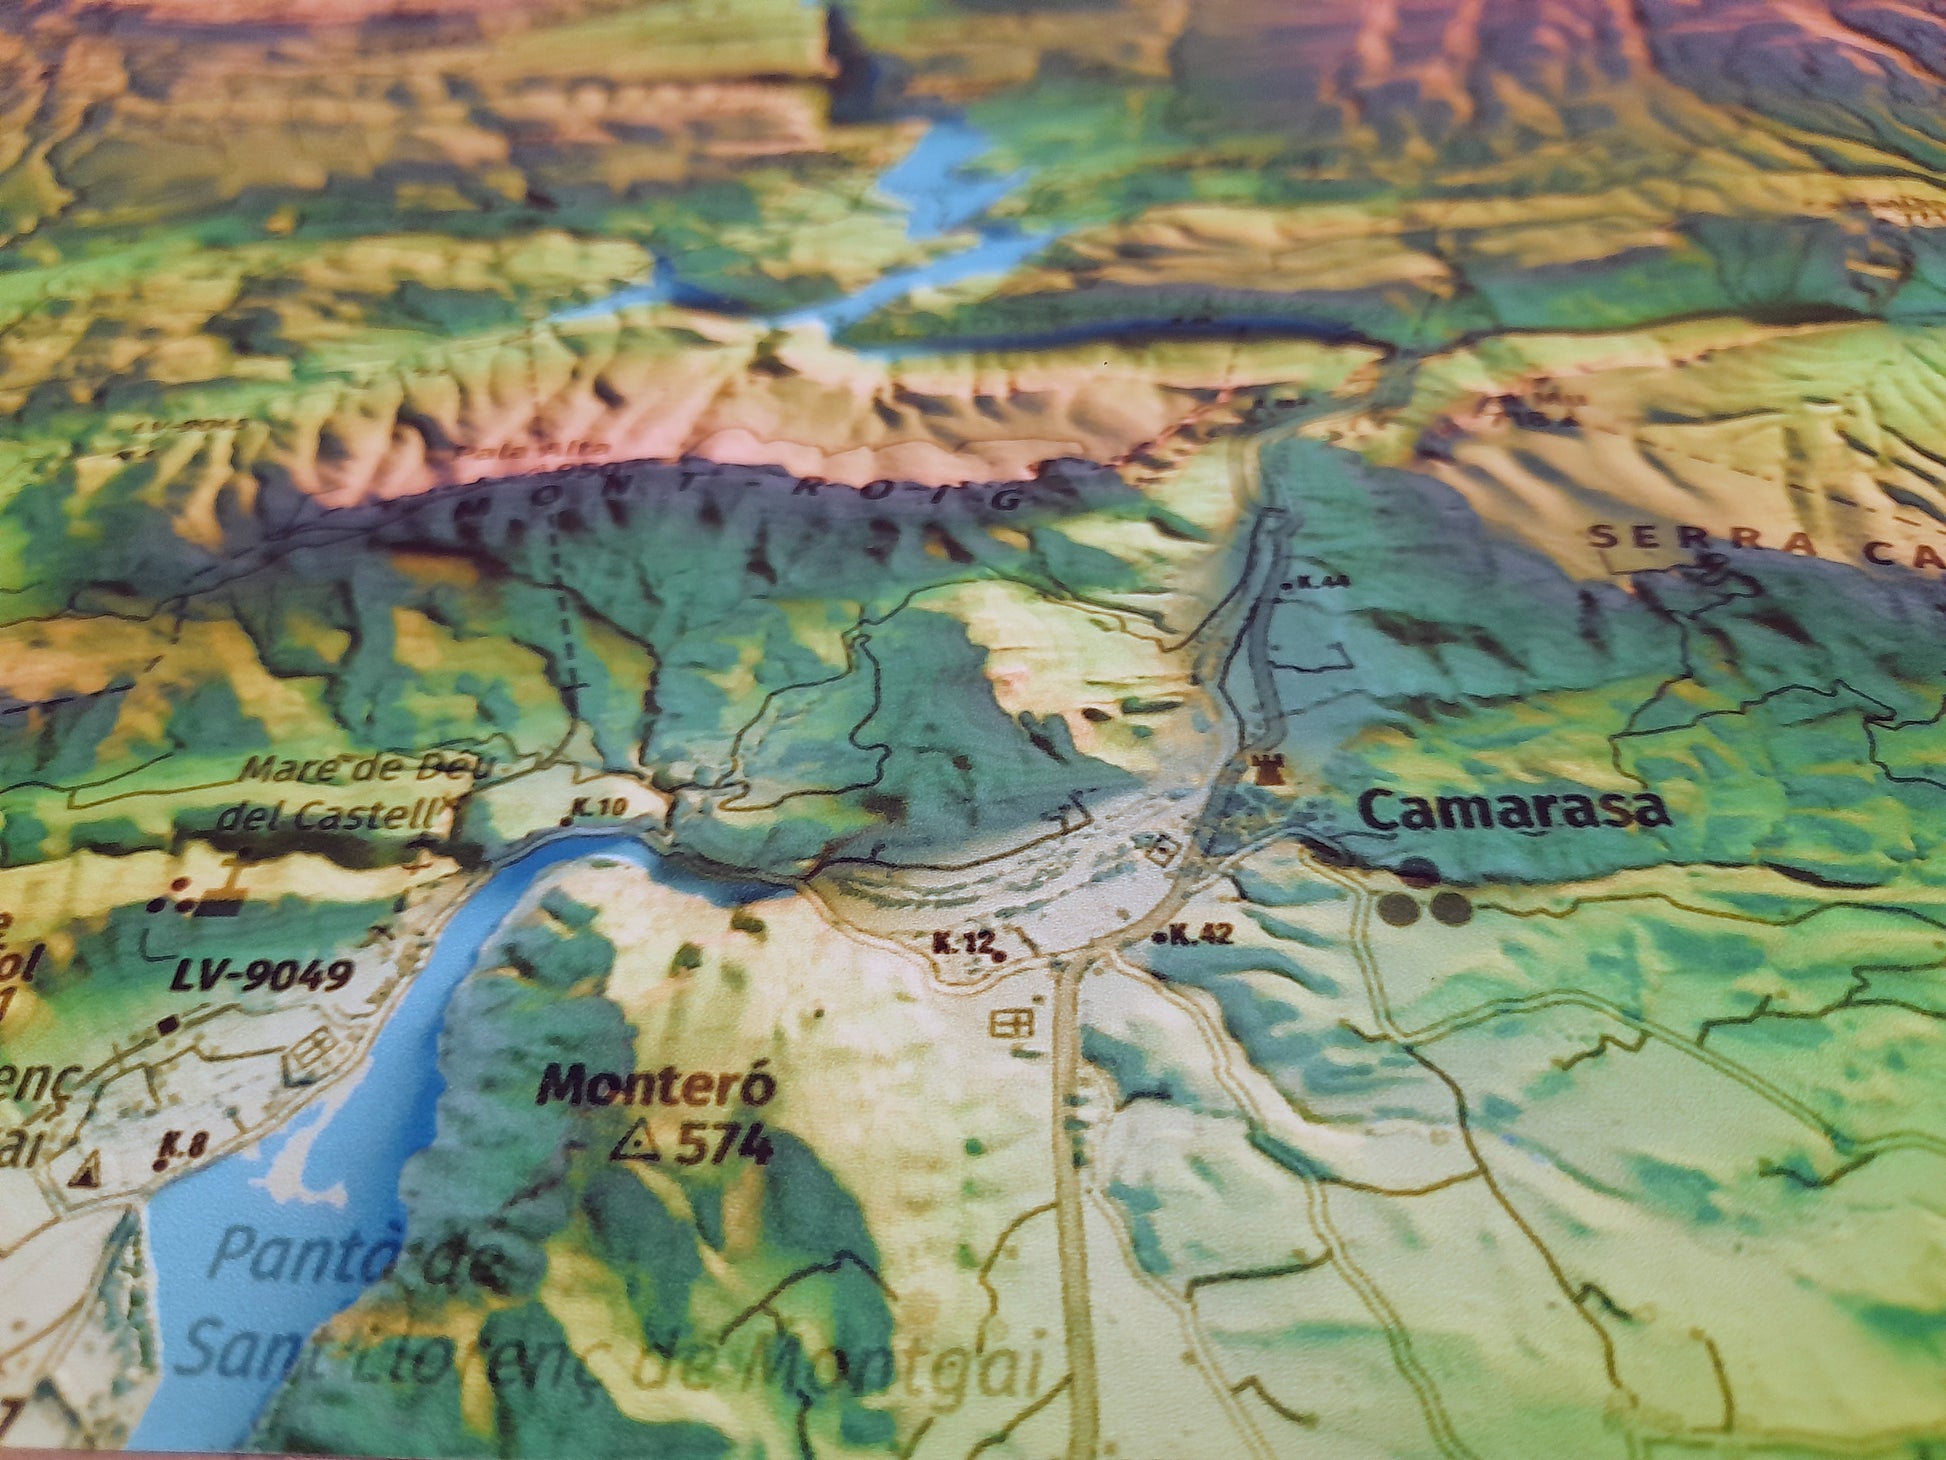 Detall de Camarasa. Mapa imprès que inclou tota la Serra del Montsec, que inclou Montsec de l'Estall, Montsec d'Ares i Montsec de Rúbies (o de Meià). El mapa es presenta en un estil minimalista i elegant, amb un detallat modelatge d'elevacions terrestres mapa imprès que abasta tota la Serra del Montsec, que inclou Montsec de l'Estall, Montsec d'Ares i Montsec de Rúbies (o de Meià). El mapa es presenta en un estil minimalista i elegant, amb un modelat detallat d'elevacions terrestres.